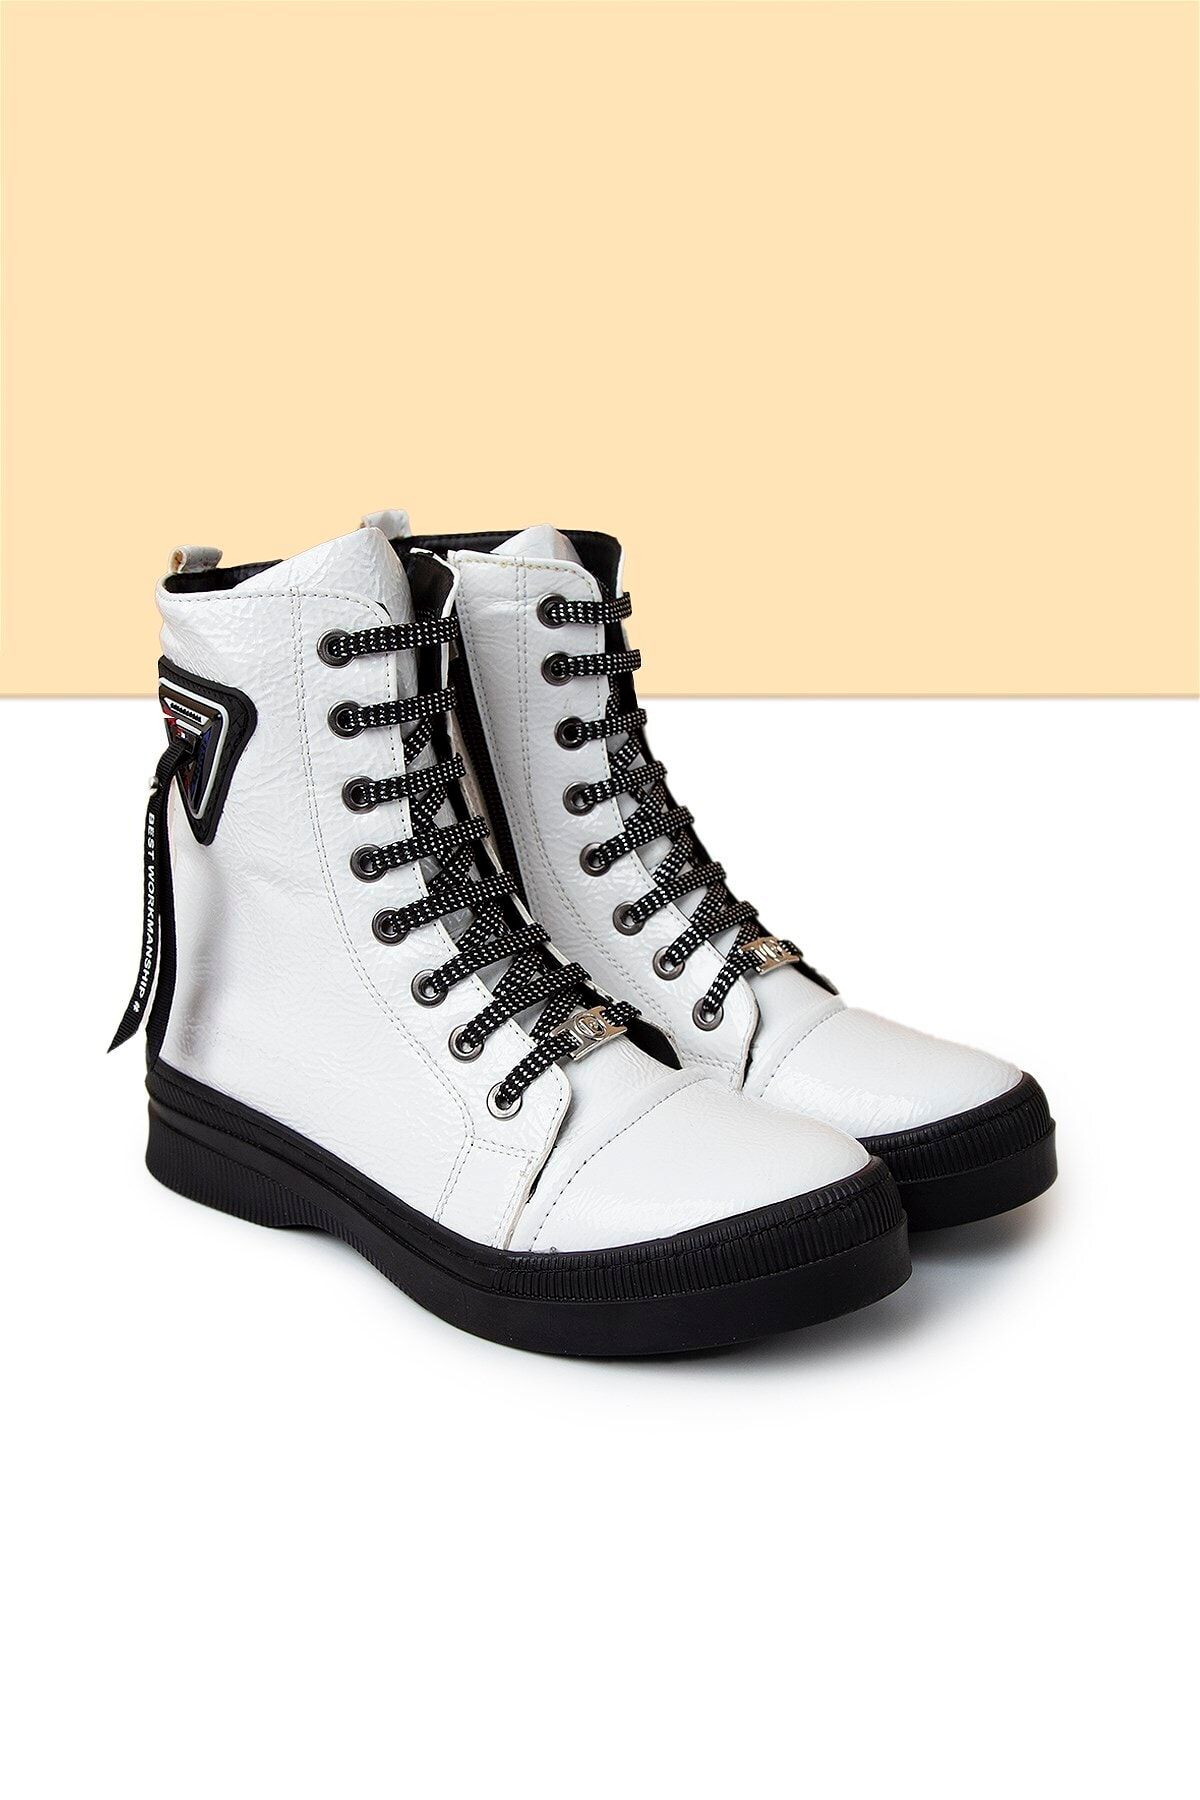 Pierre Cardin PC-50727 Beyaz Kadın Ayakkabı